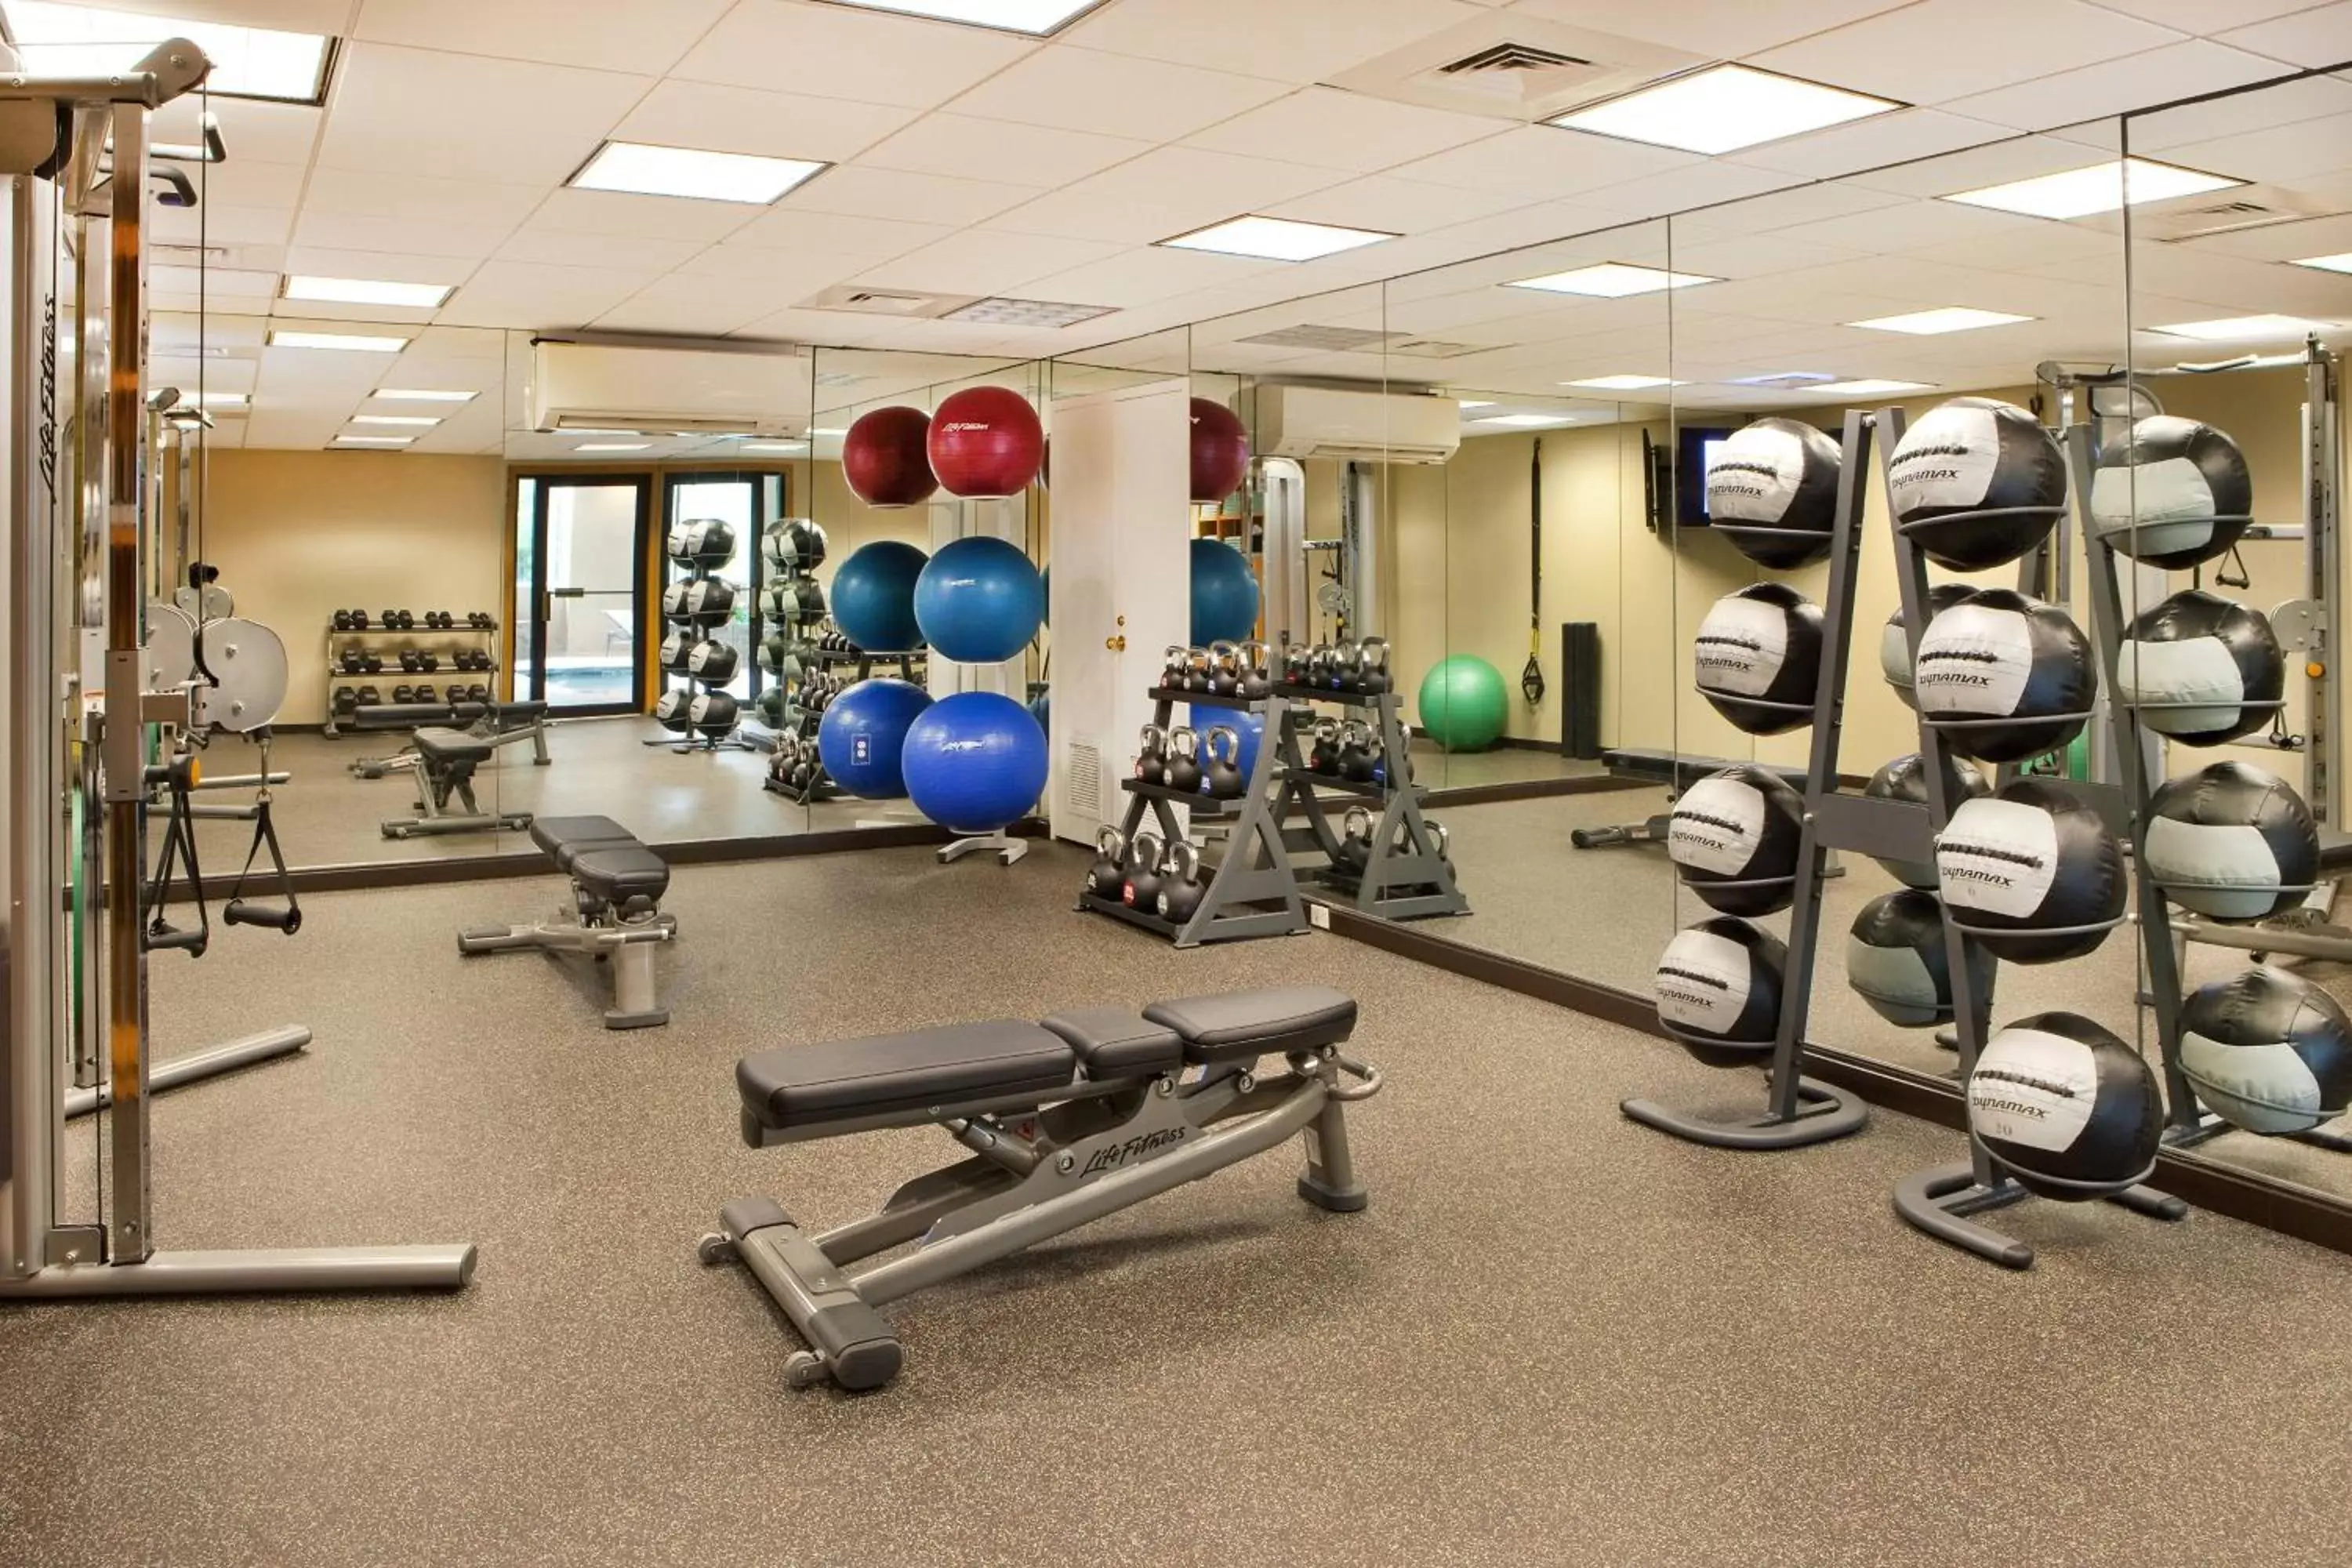 Fitness centre/facilities, Fitness Center/Facilities in Boston Marriott Burlington